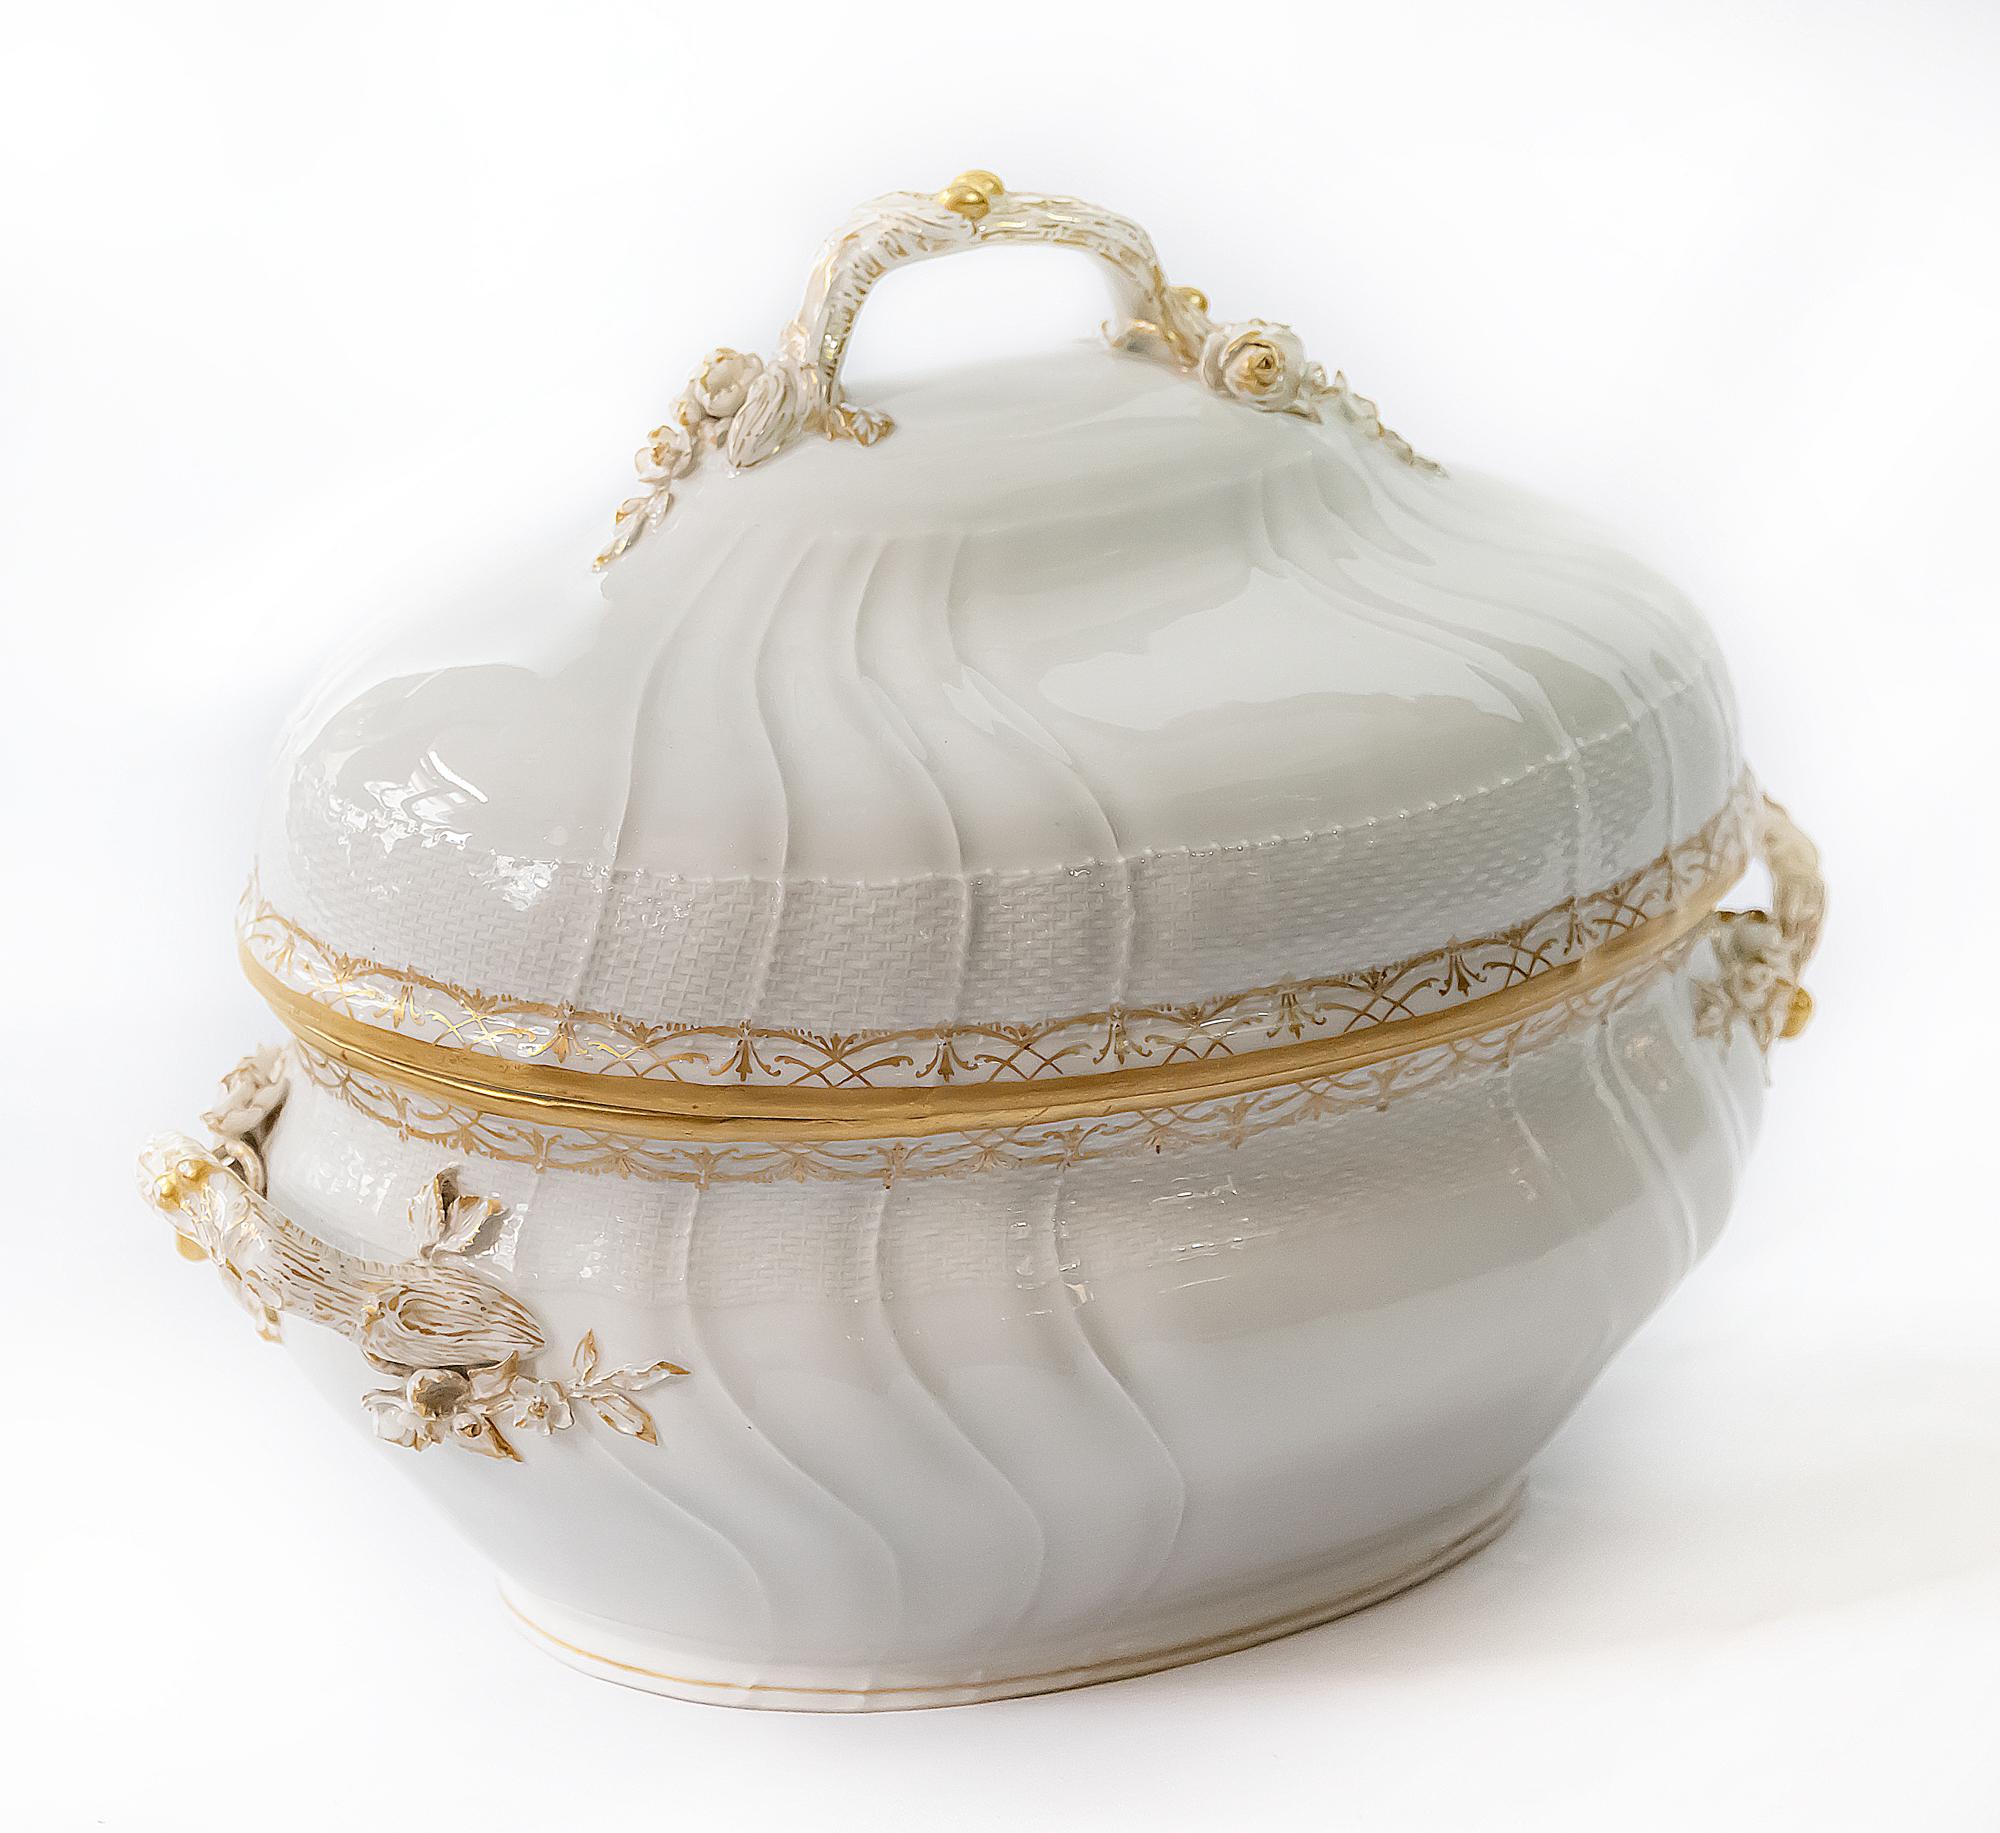 L'ancienne soupière ovale en porcelaine KPM est fabriquée à la main avec une surface glacée ornée de reliefs.
Il est peint à la main avec de l'or et décoré de bouquets de fleurs moulés sur les poignées.
Dimensions : 38 x 25x (H)29 cm.